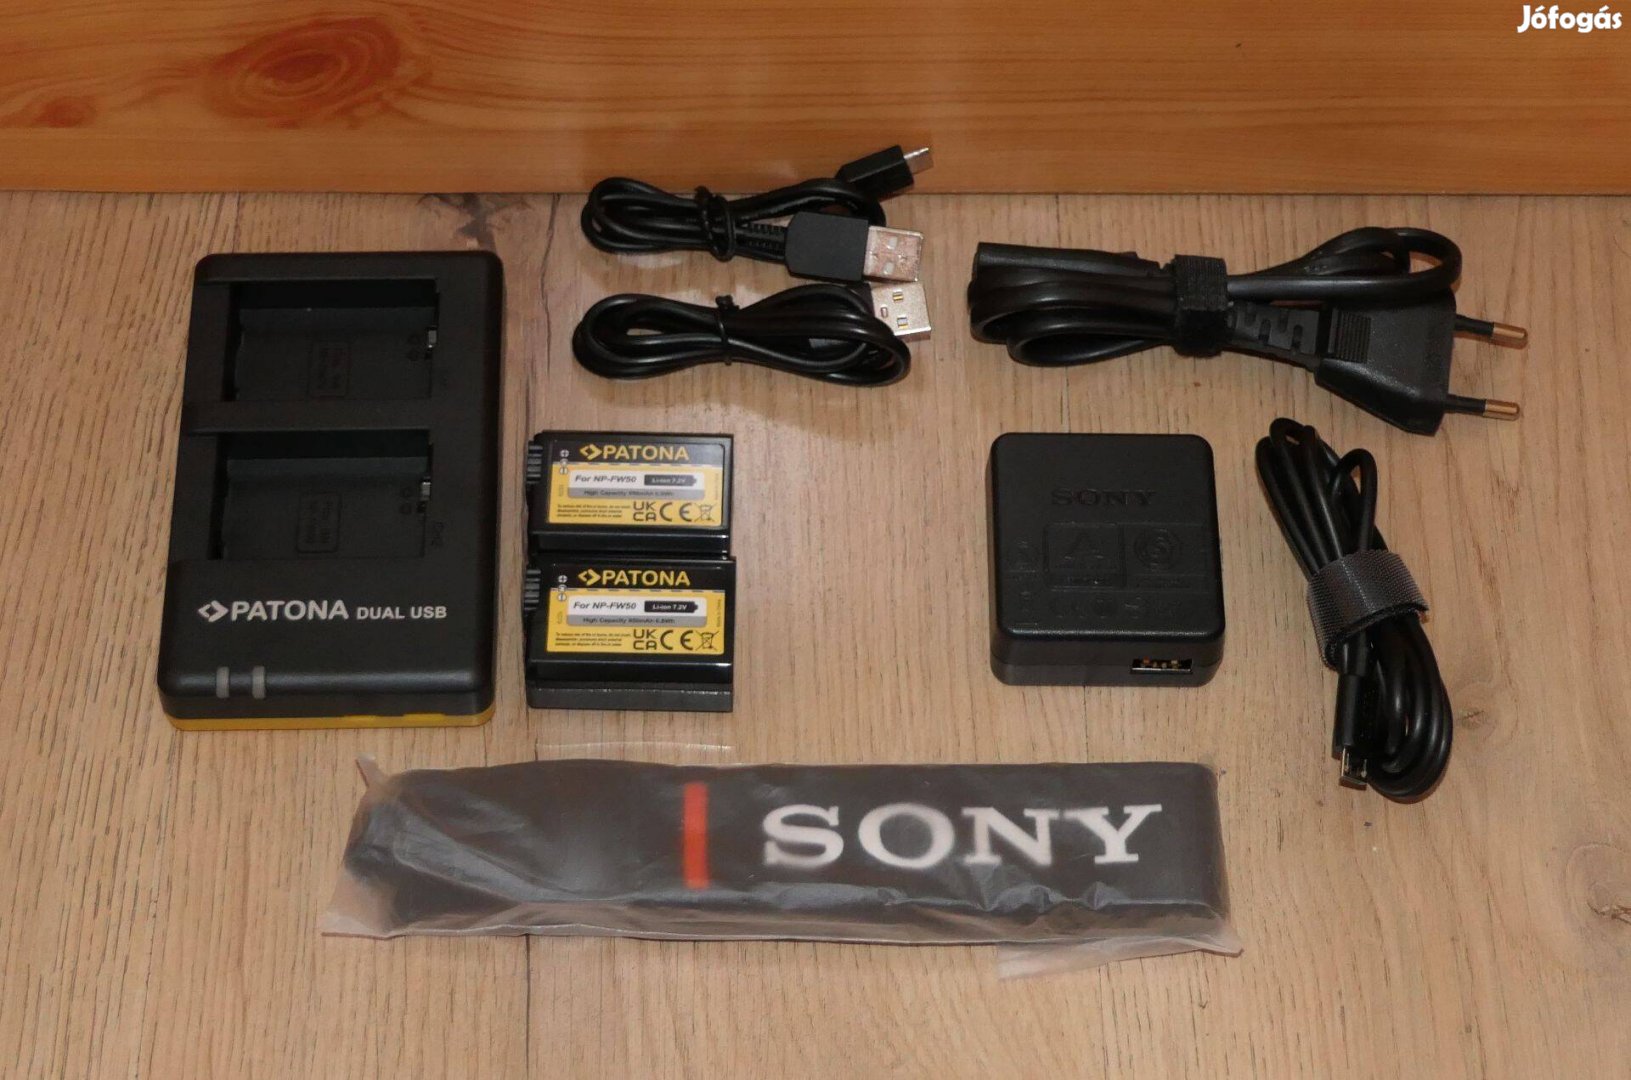 Sony RX-10 gyári töltő, nyakpánt, Patona töltő és akkumulátorok